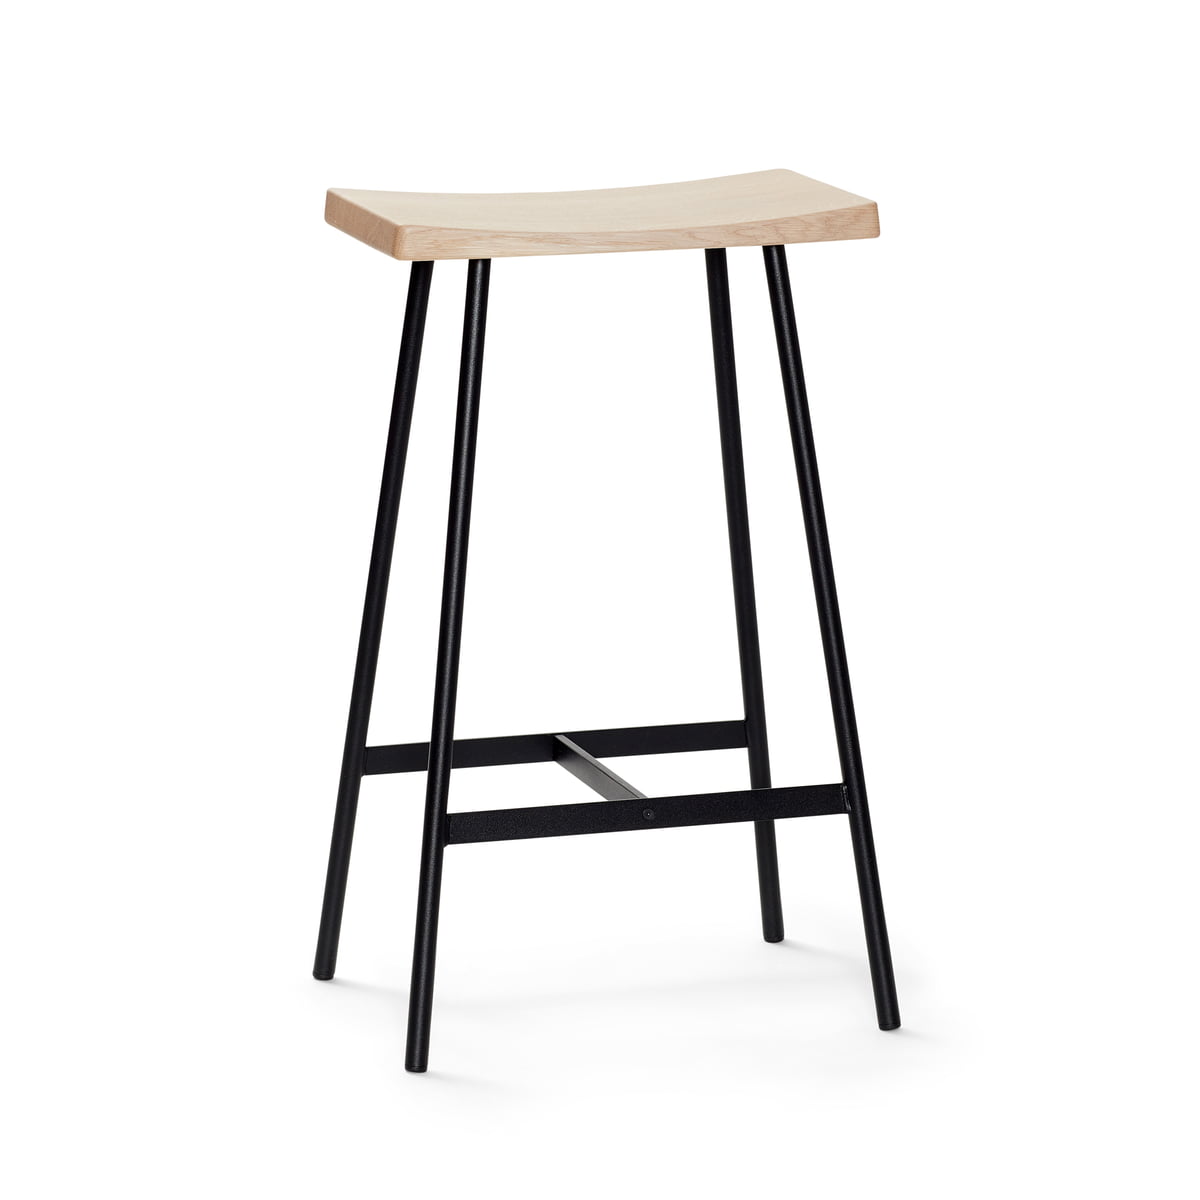 Andersen furniture - Tabouret de bar hc2 h 65 cm, chêne pigmenté blanc / acier noir